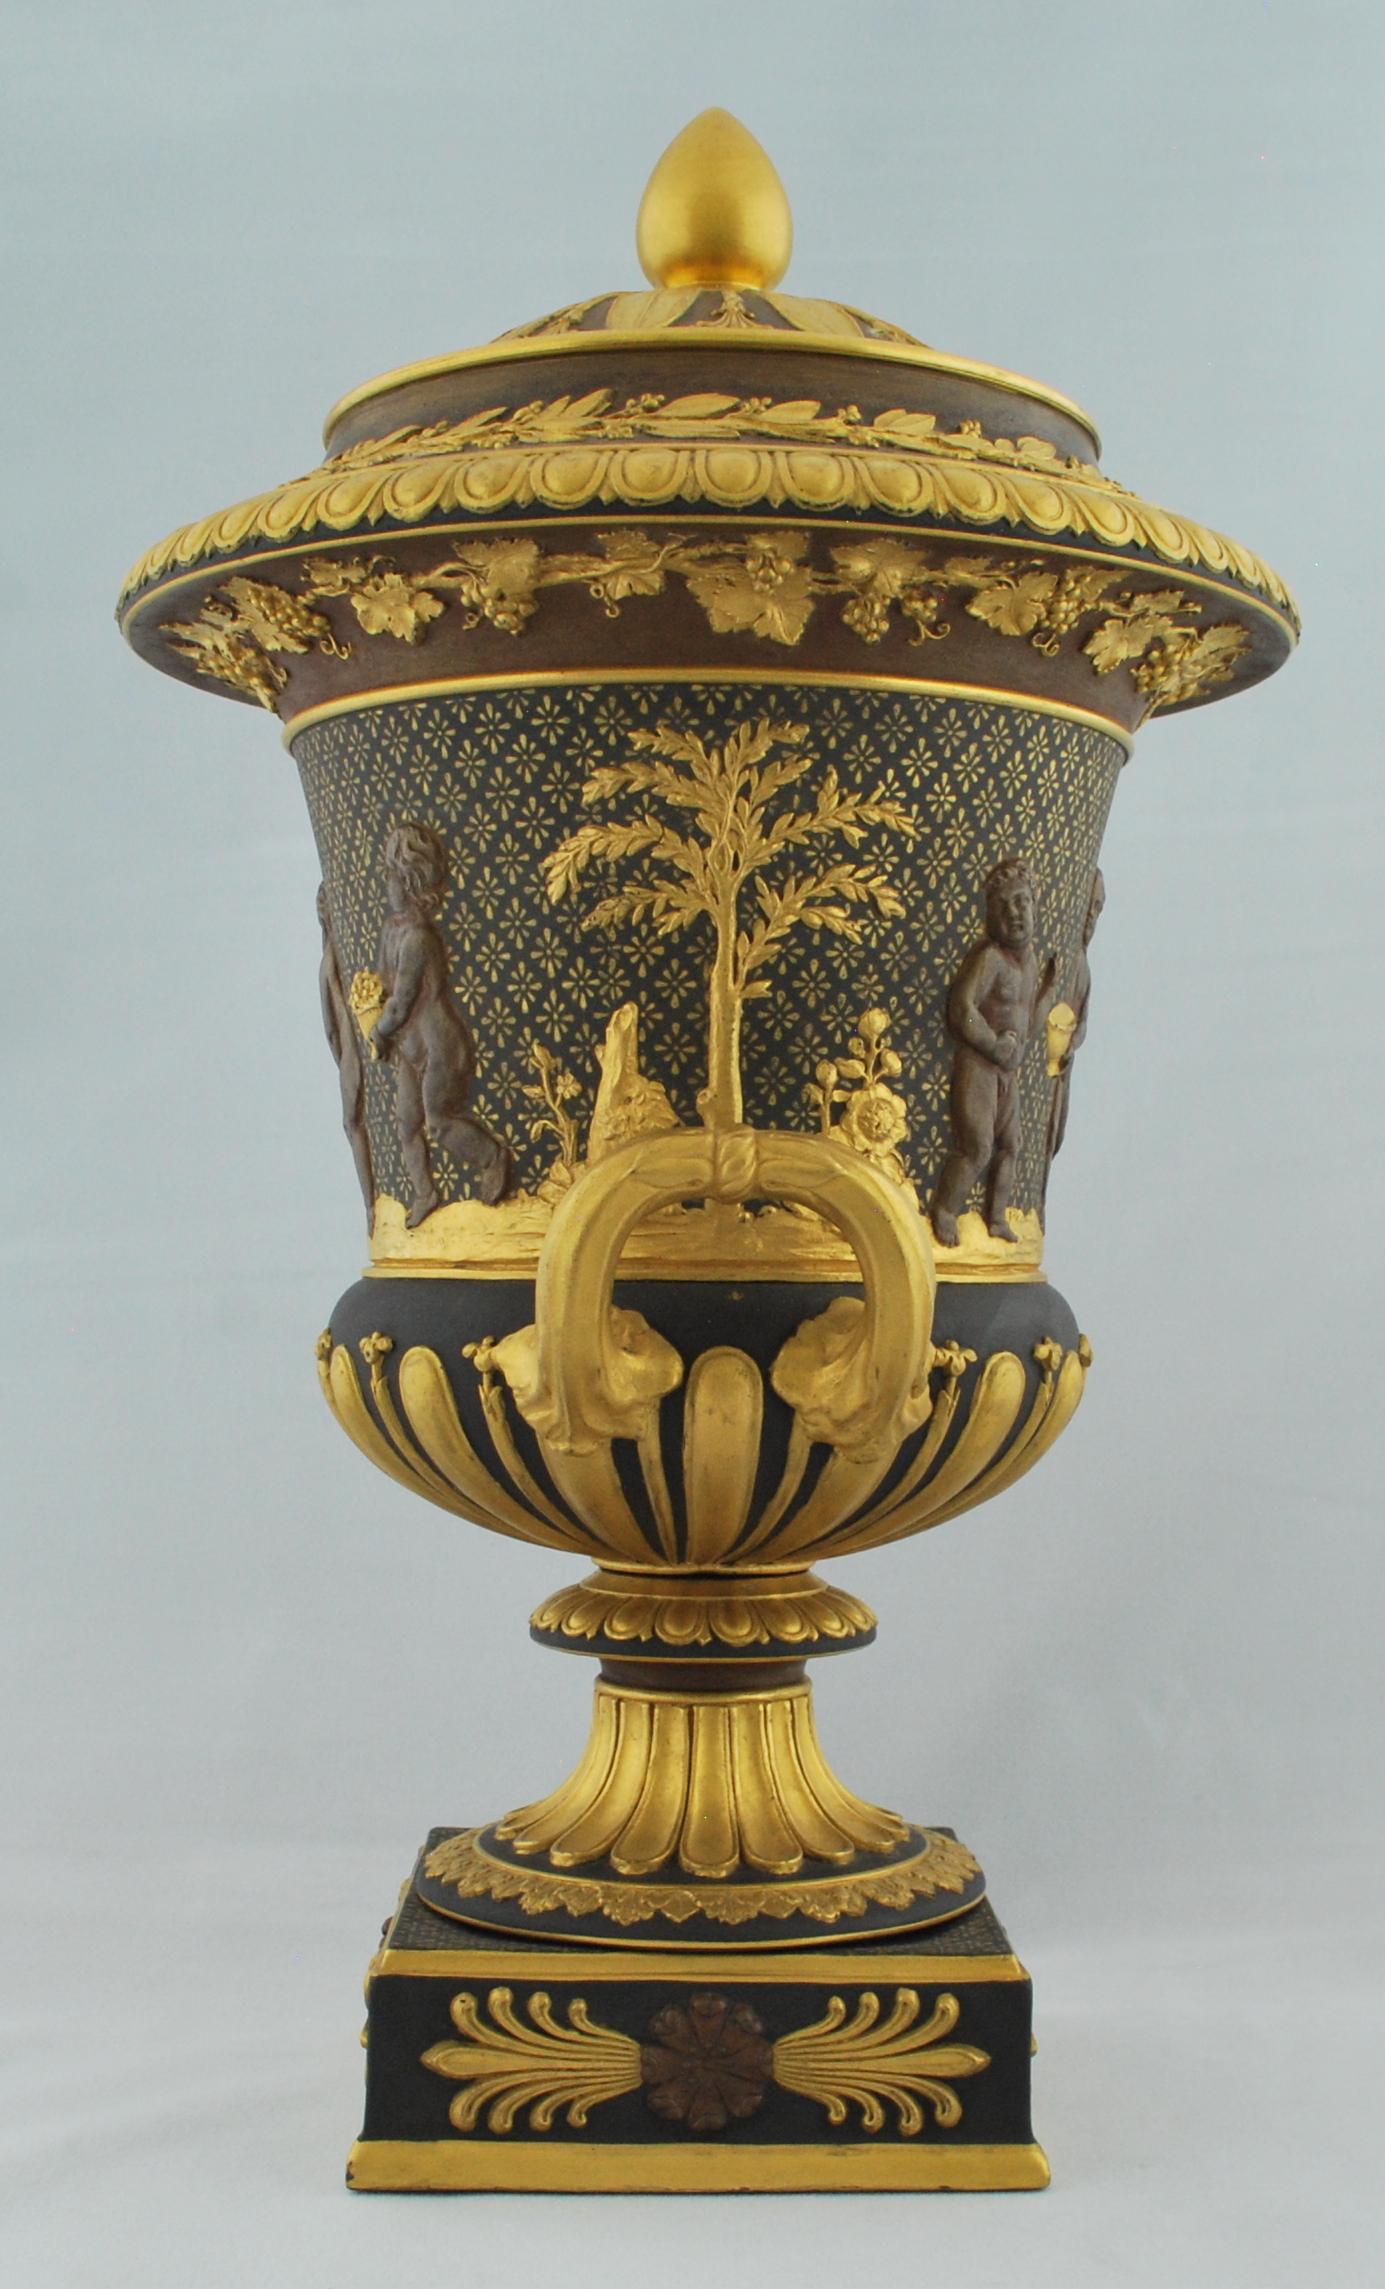 Un exemple exceptionnellement grand d'une forme rare de décoration. Le vase est bronzé et doré, à l'imitation des bronzes japonais de l'époque.

   